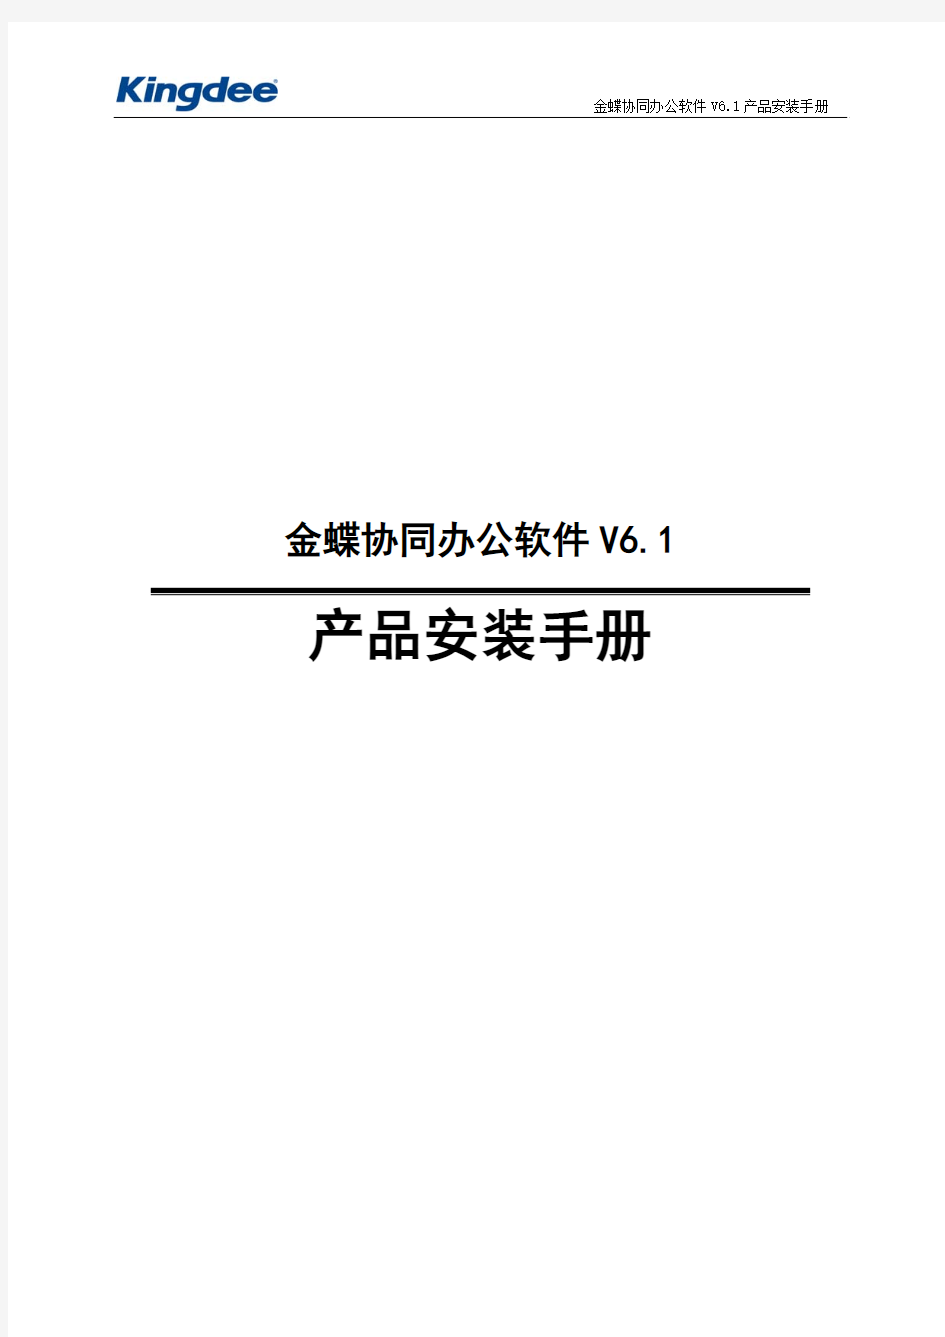 金蝶协同办公软件V6.1产品安装手册